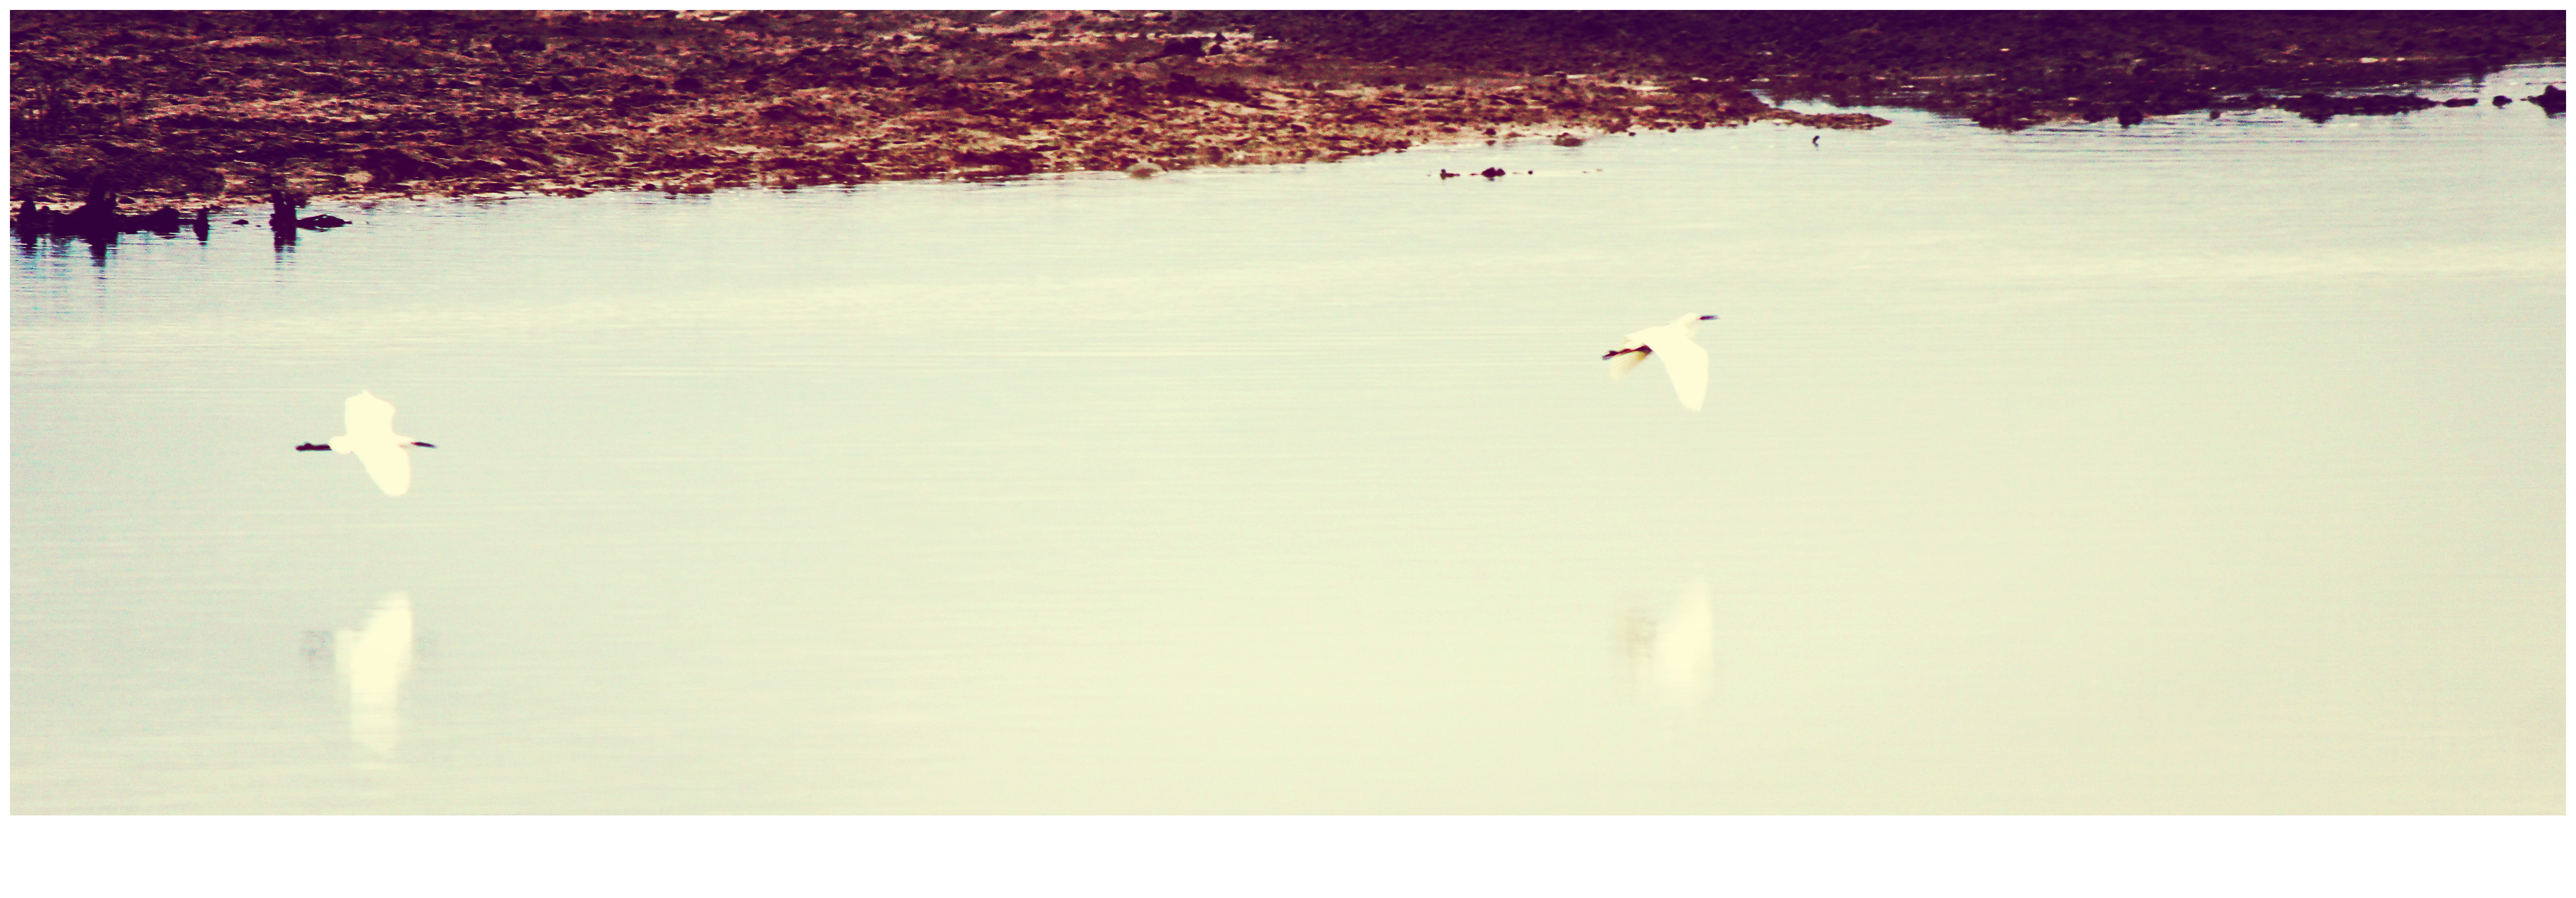 碧里湿地--白鹭的天堂